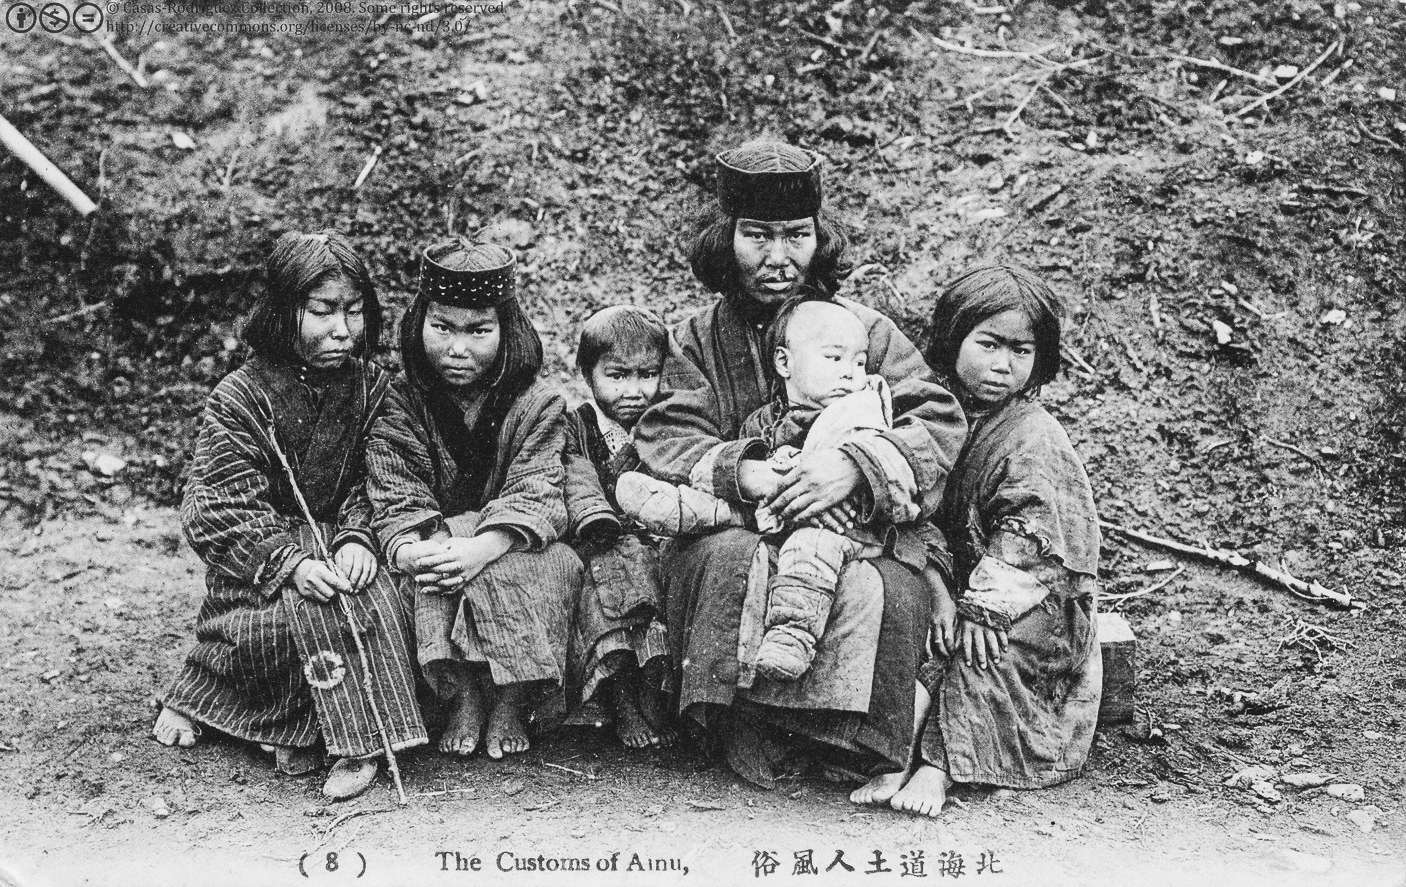 Les Ainu (également appelés Ezo dans les textes historiques) sont un groupe ethnique indigène d'Hokkaidō, des îles Kouriles et d'une grande partie de Sakhaline. Il y a probablement plus de 150,000 XNUMX Ainu aujourd'hui ; cependant, le chiffre exact n'est pas connu car de nombreux Ainu cachent leur origine en raison de problèmes raciaux au Japon